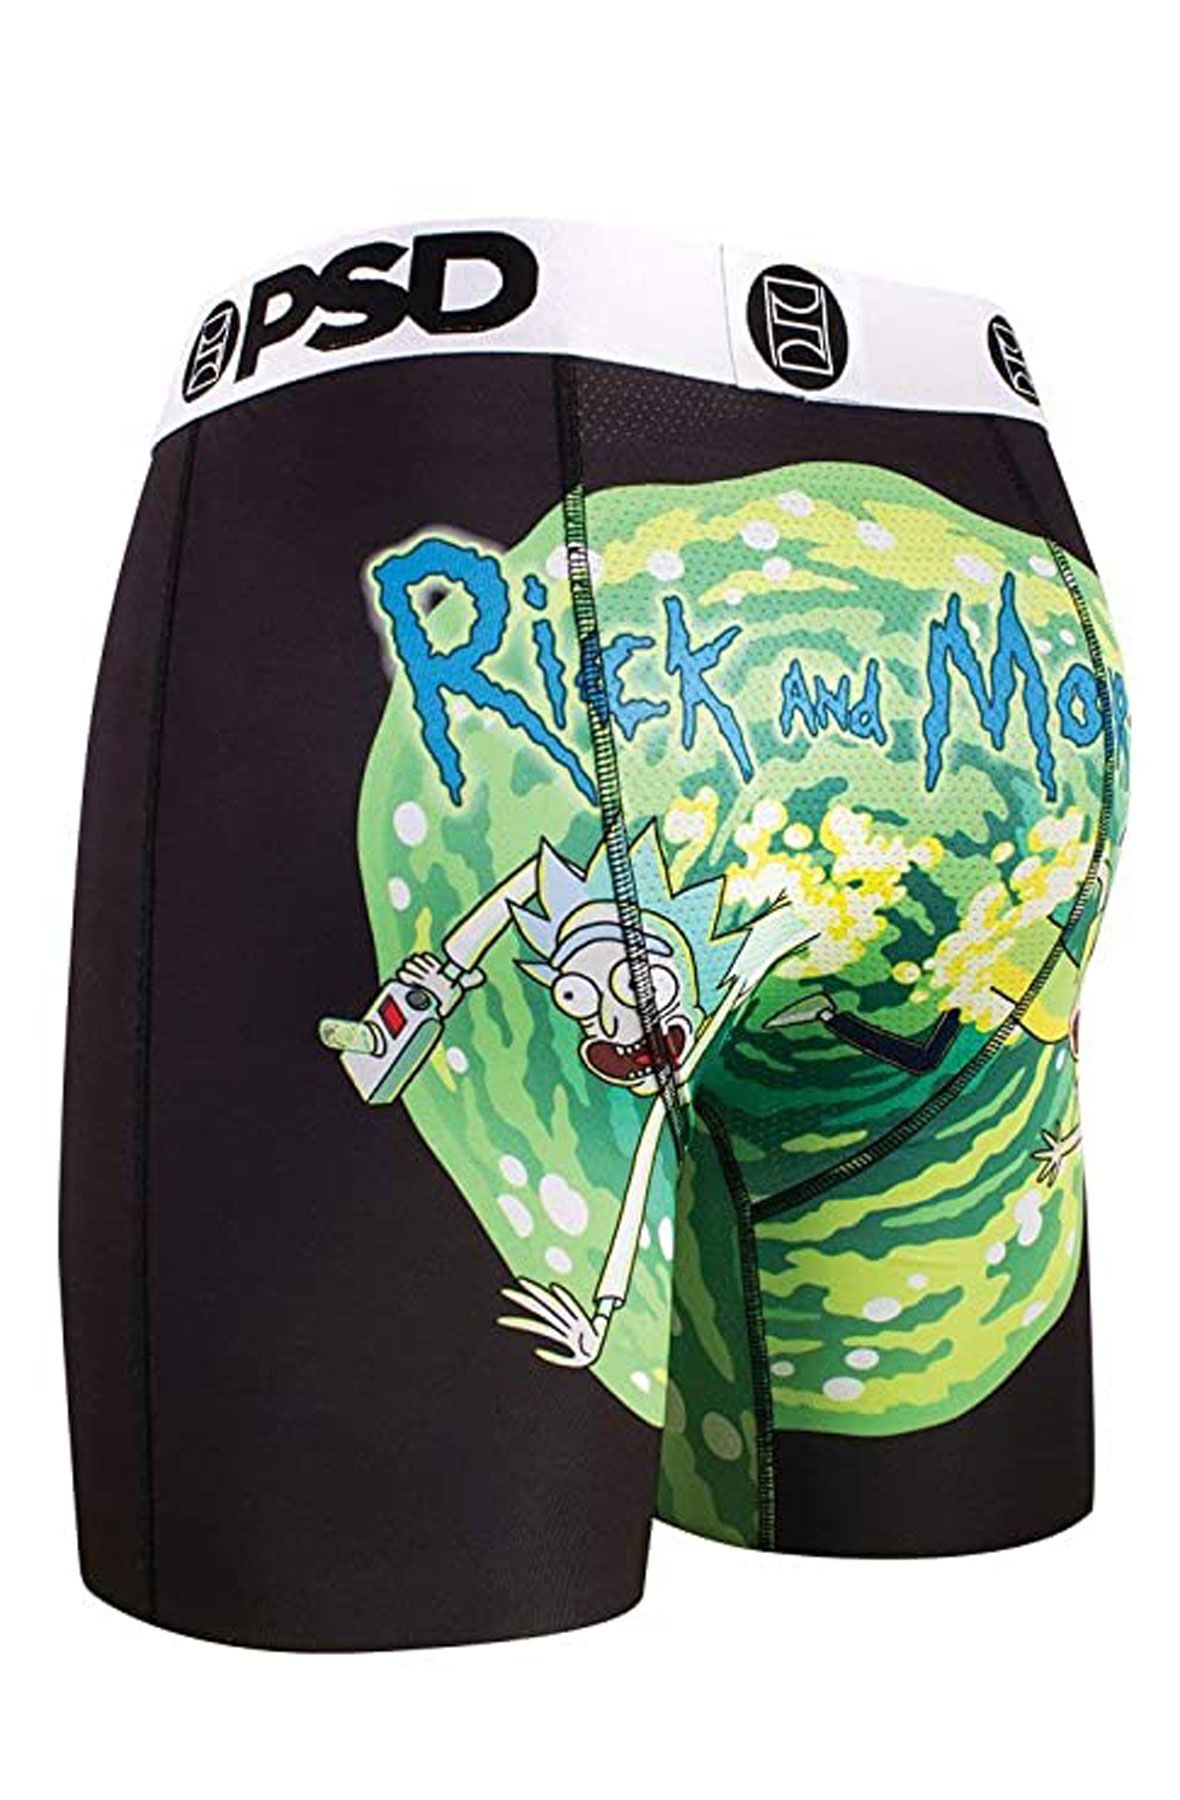 PSD Rick & Morty Classic Underwear E1182055 - Shiekh